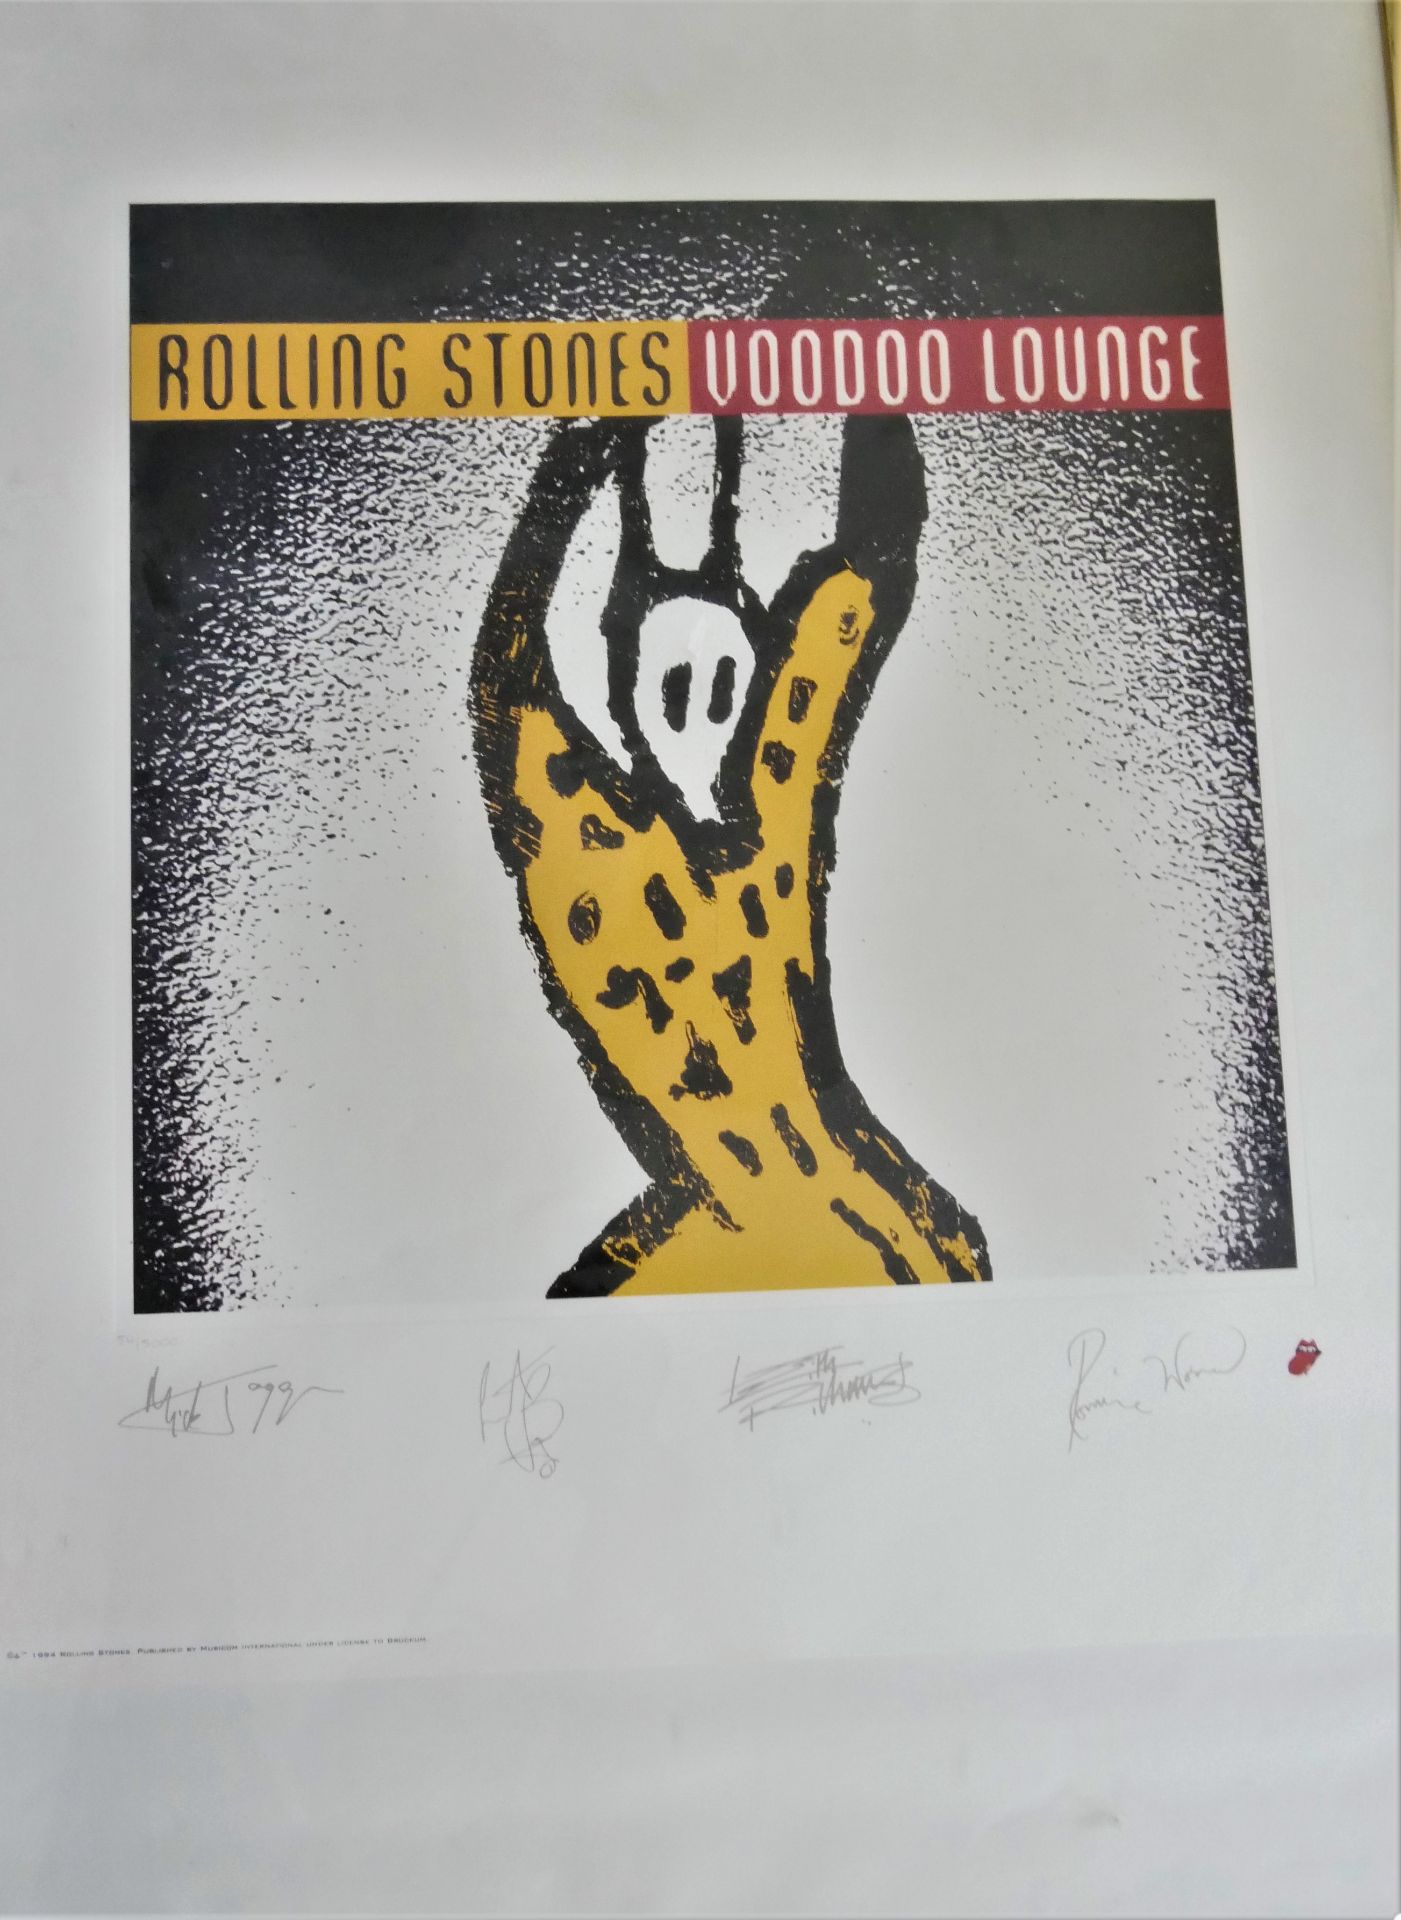 seltene Rolling Stones "Voodoo Lounge", signiert. Lithographie Rar Kunstdruck. Hier Nr. 54/5000. - Bild 2 aus 4